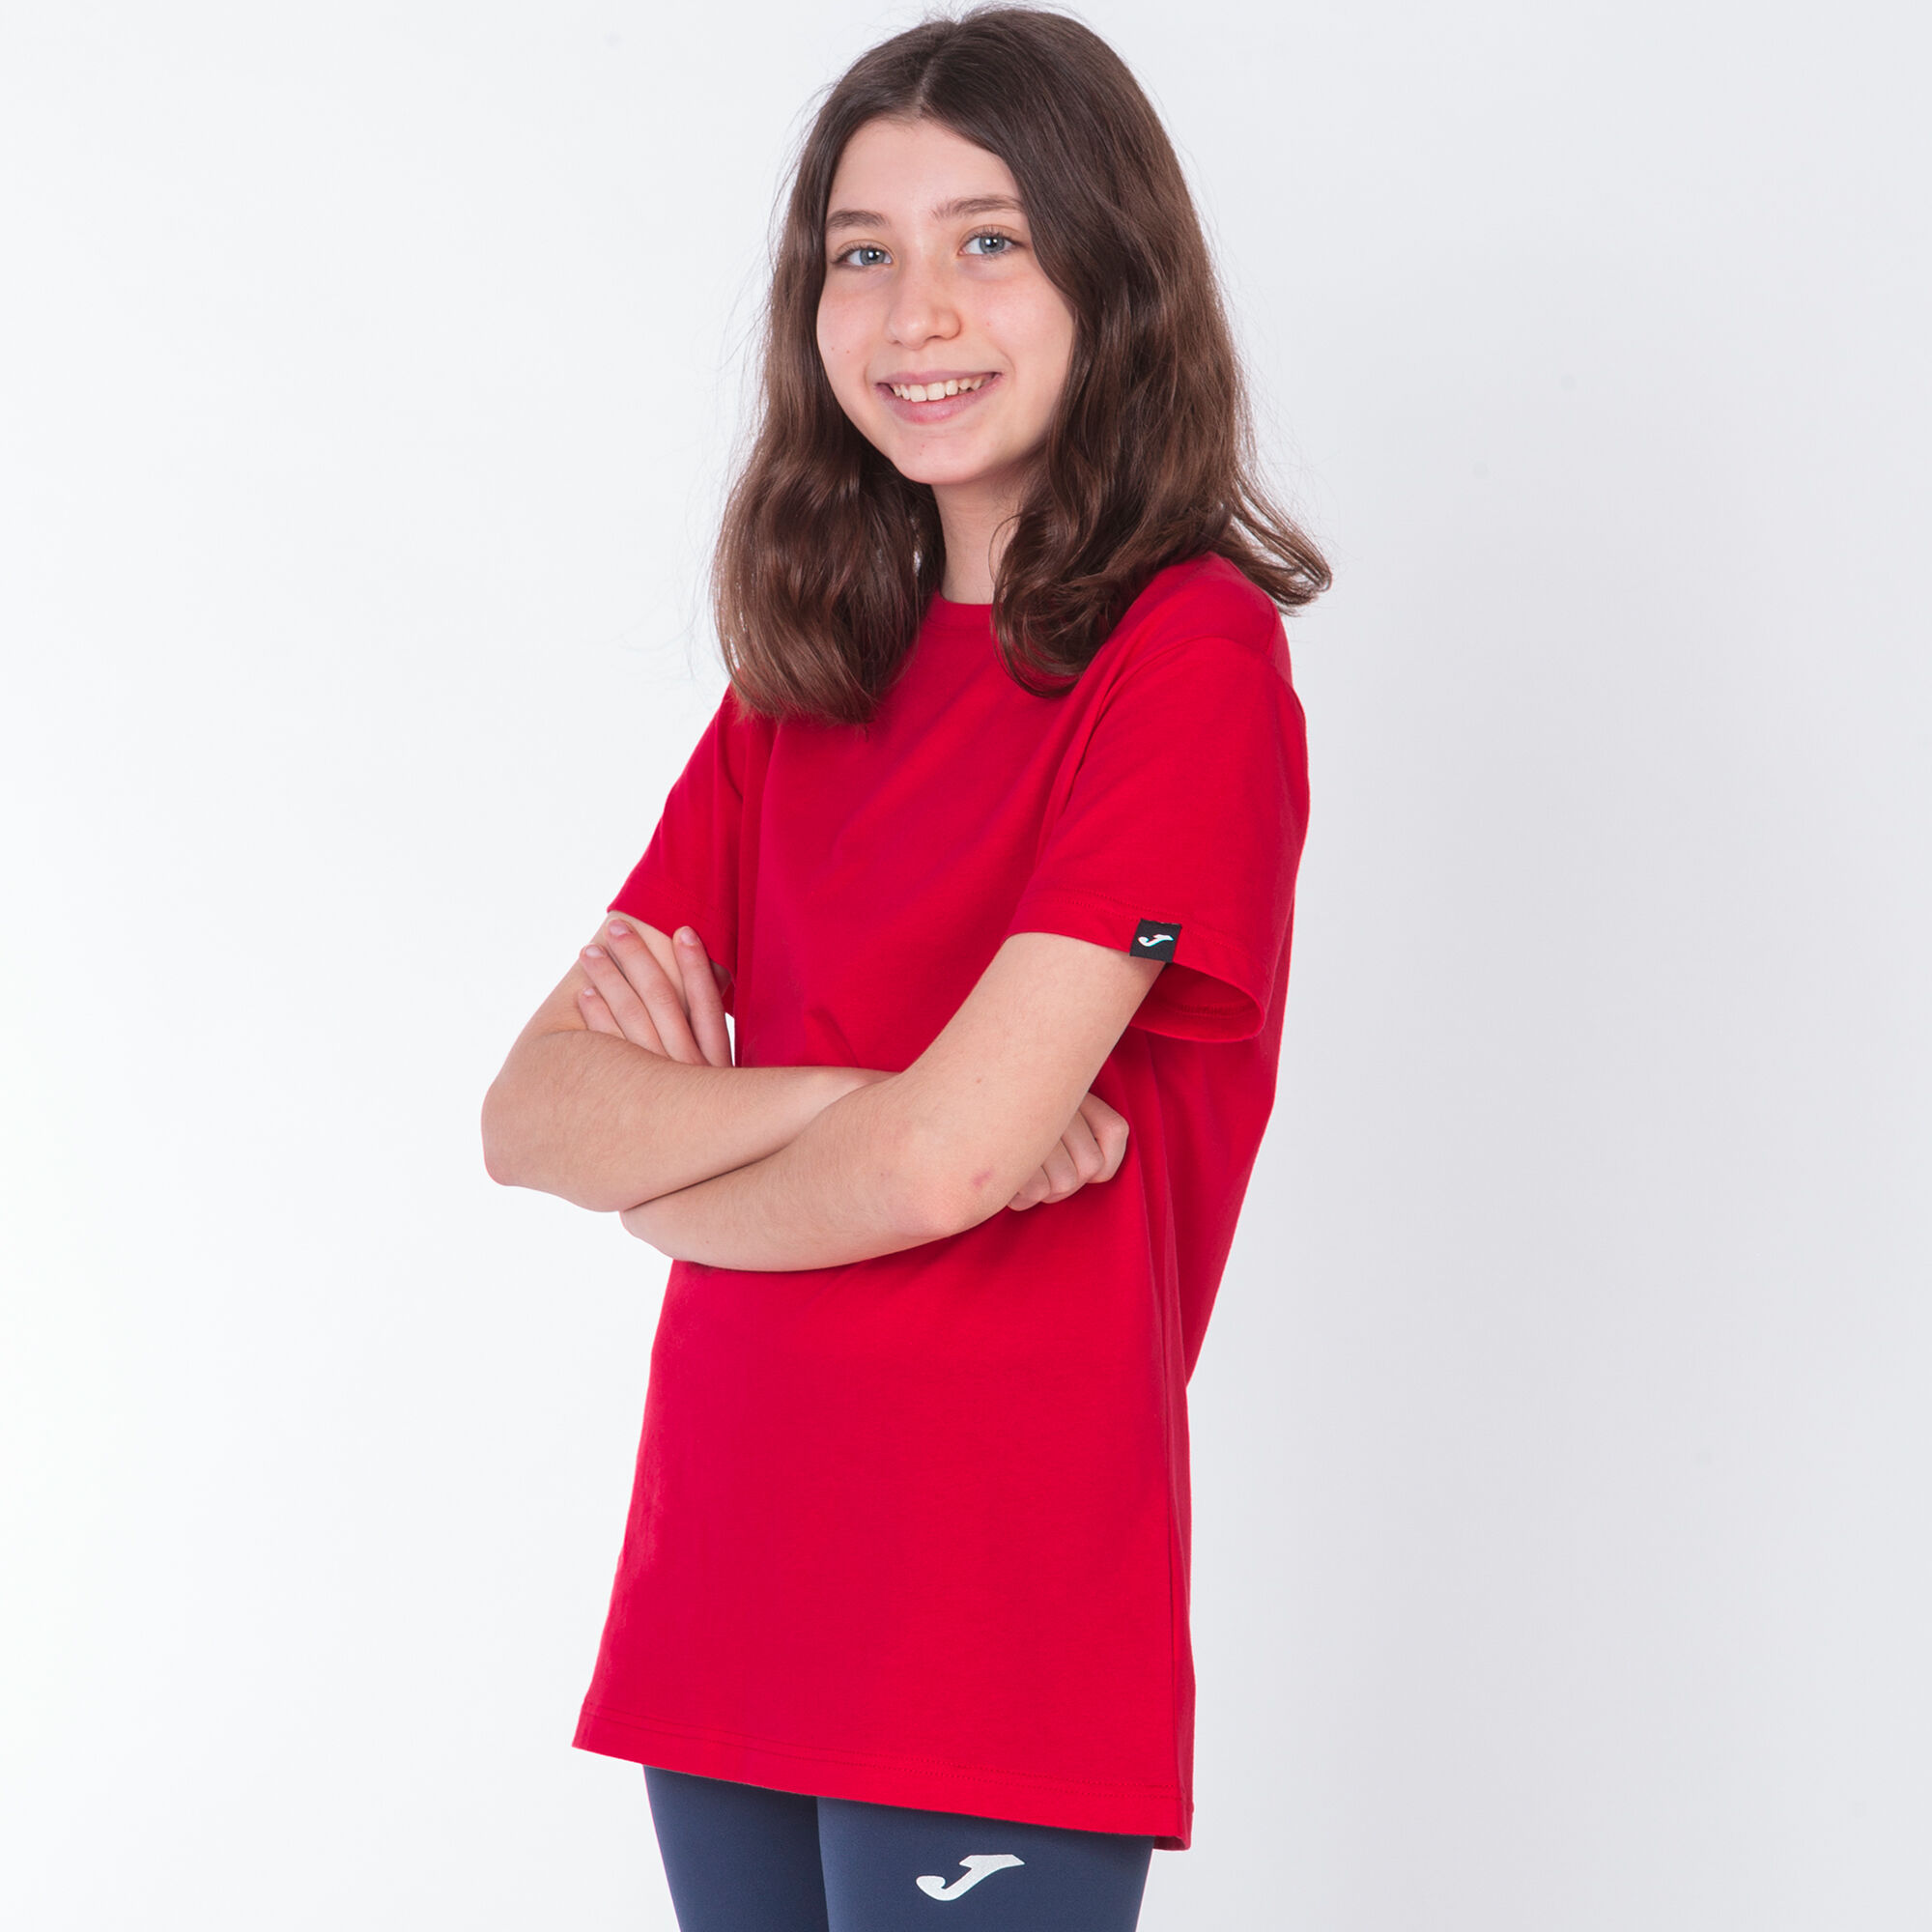 Camiseta manga corta mujer Desert rojo